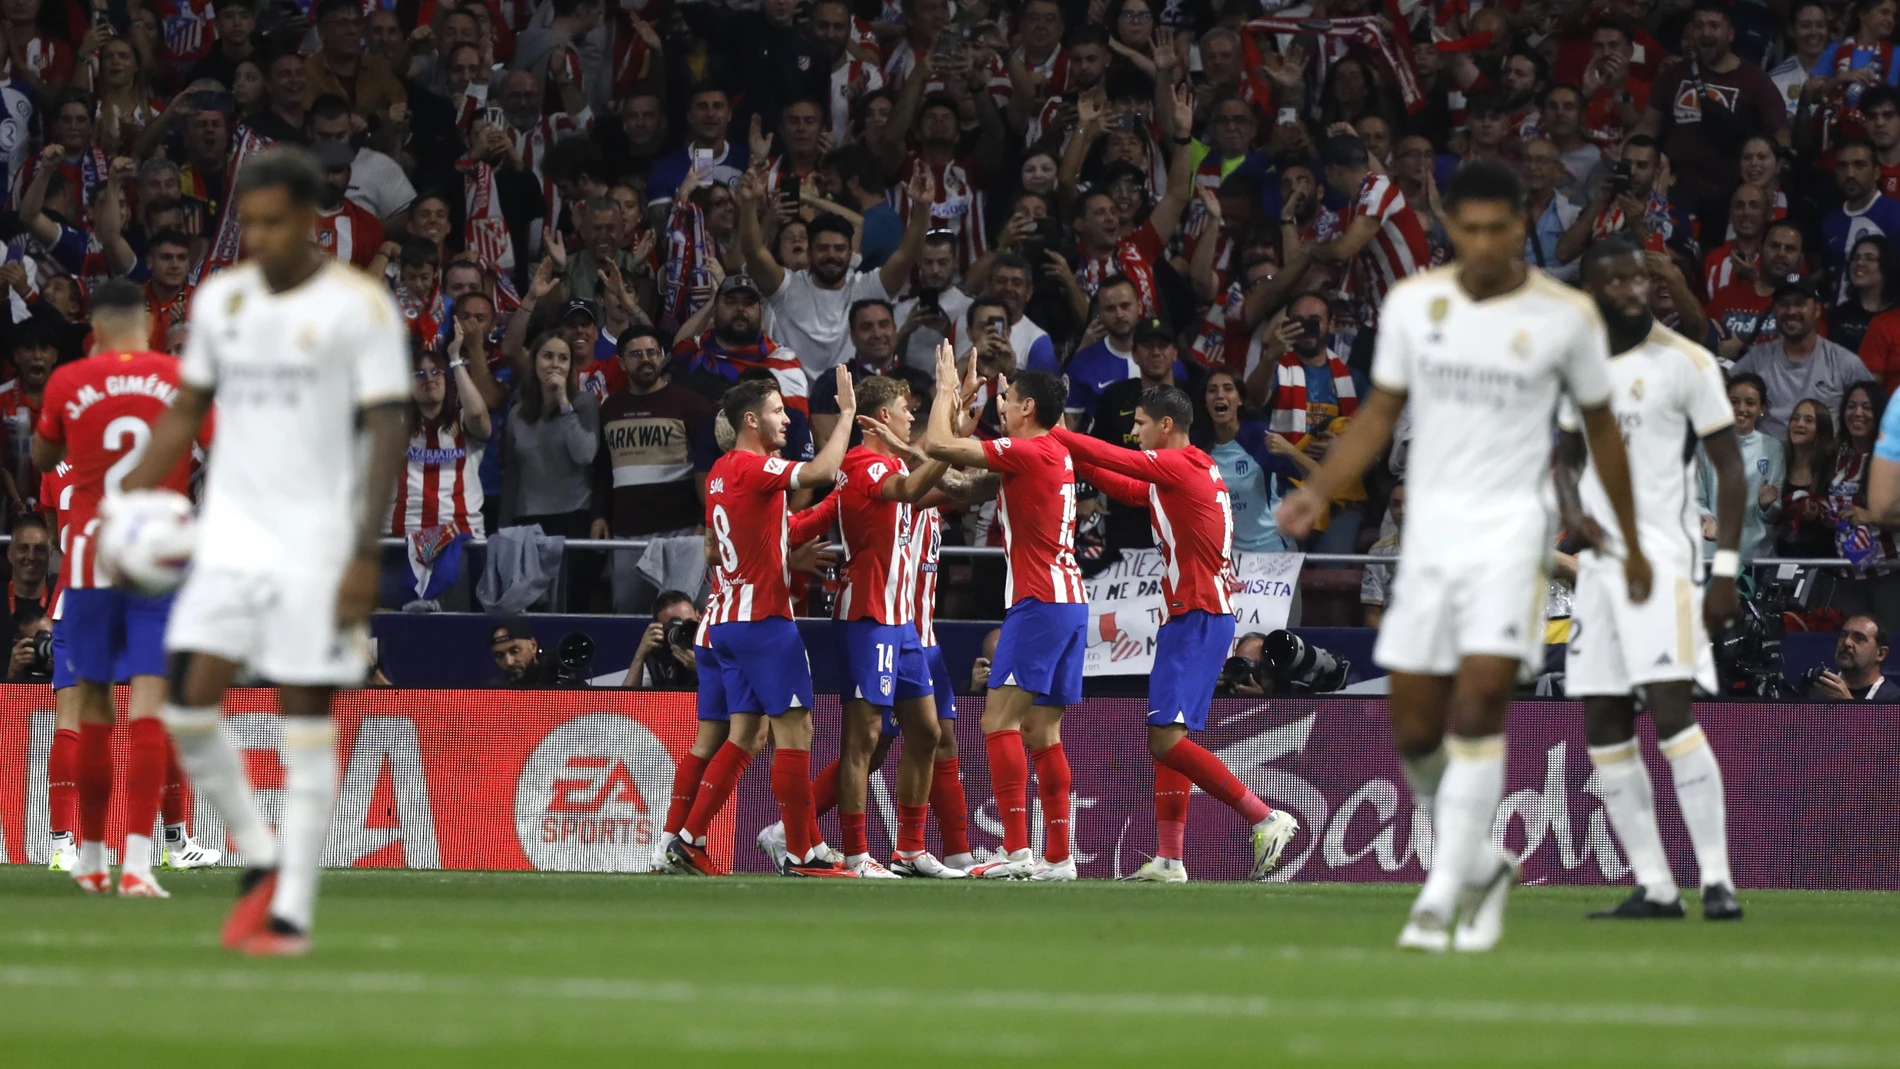 Atlético de Madrid - Real Madrid, el derbi en imágenes, Fotos, Deportes